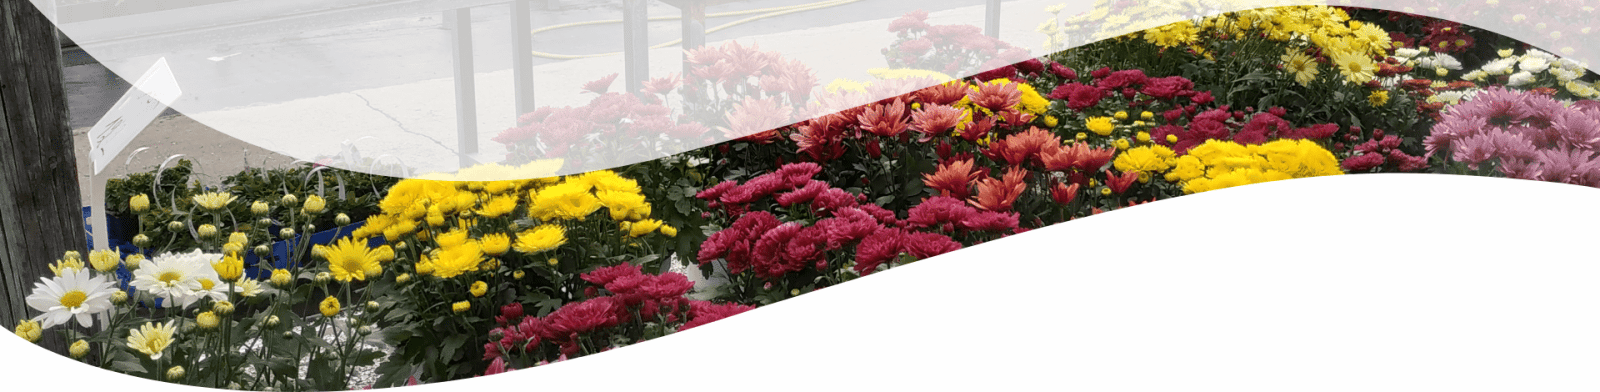 חנות פרחים כולל משלוח - משתלת הסחלב